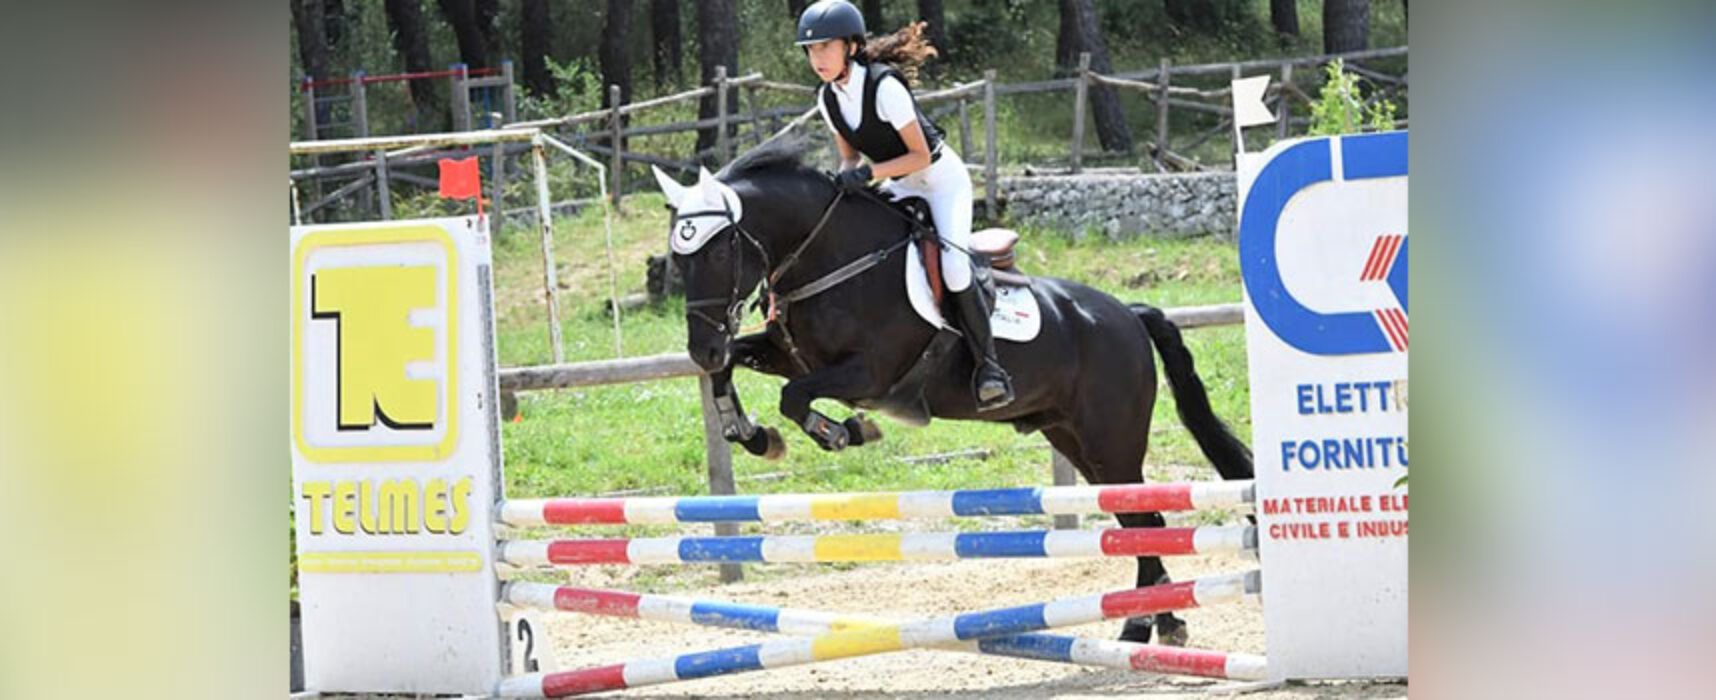 Equitazione: la biscegliese Giorgia Storelli è vice campionessa regionale nel salto ad ostacoli